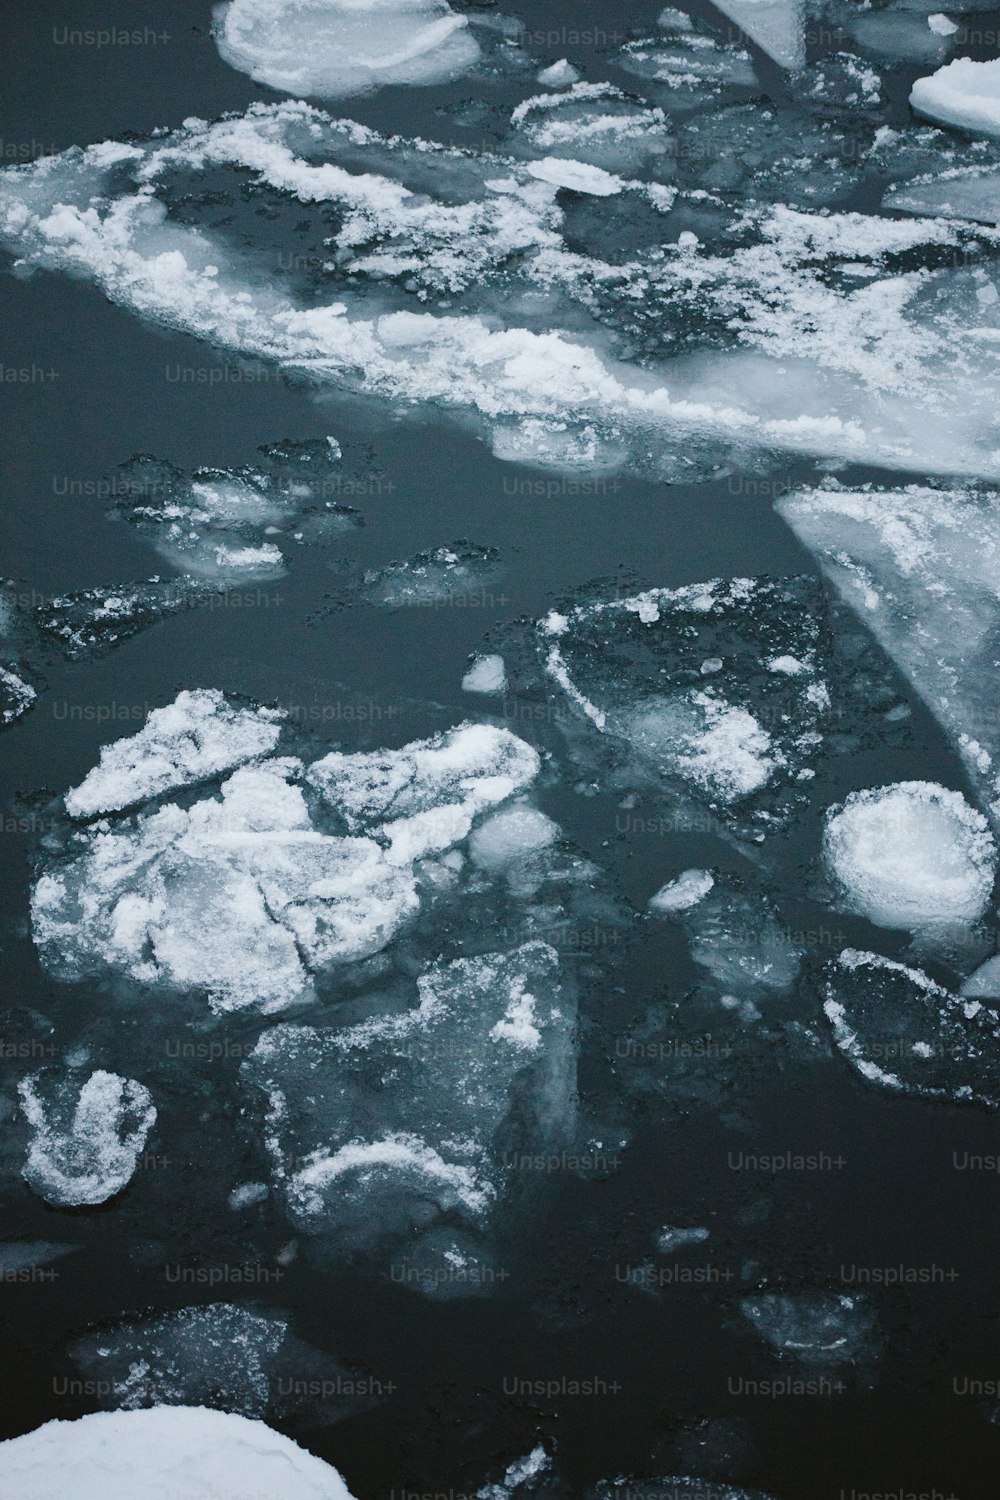 témpanos de hielo flotando en un cuerpo de agua